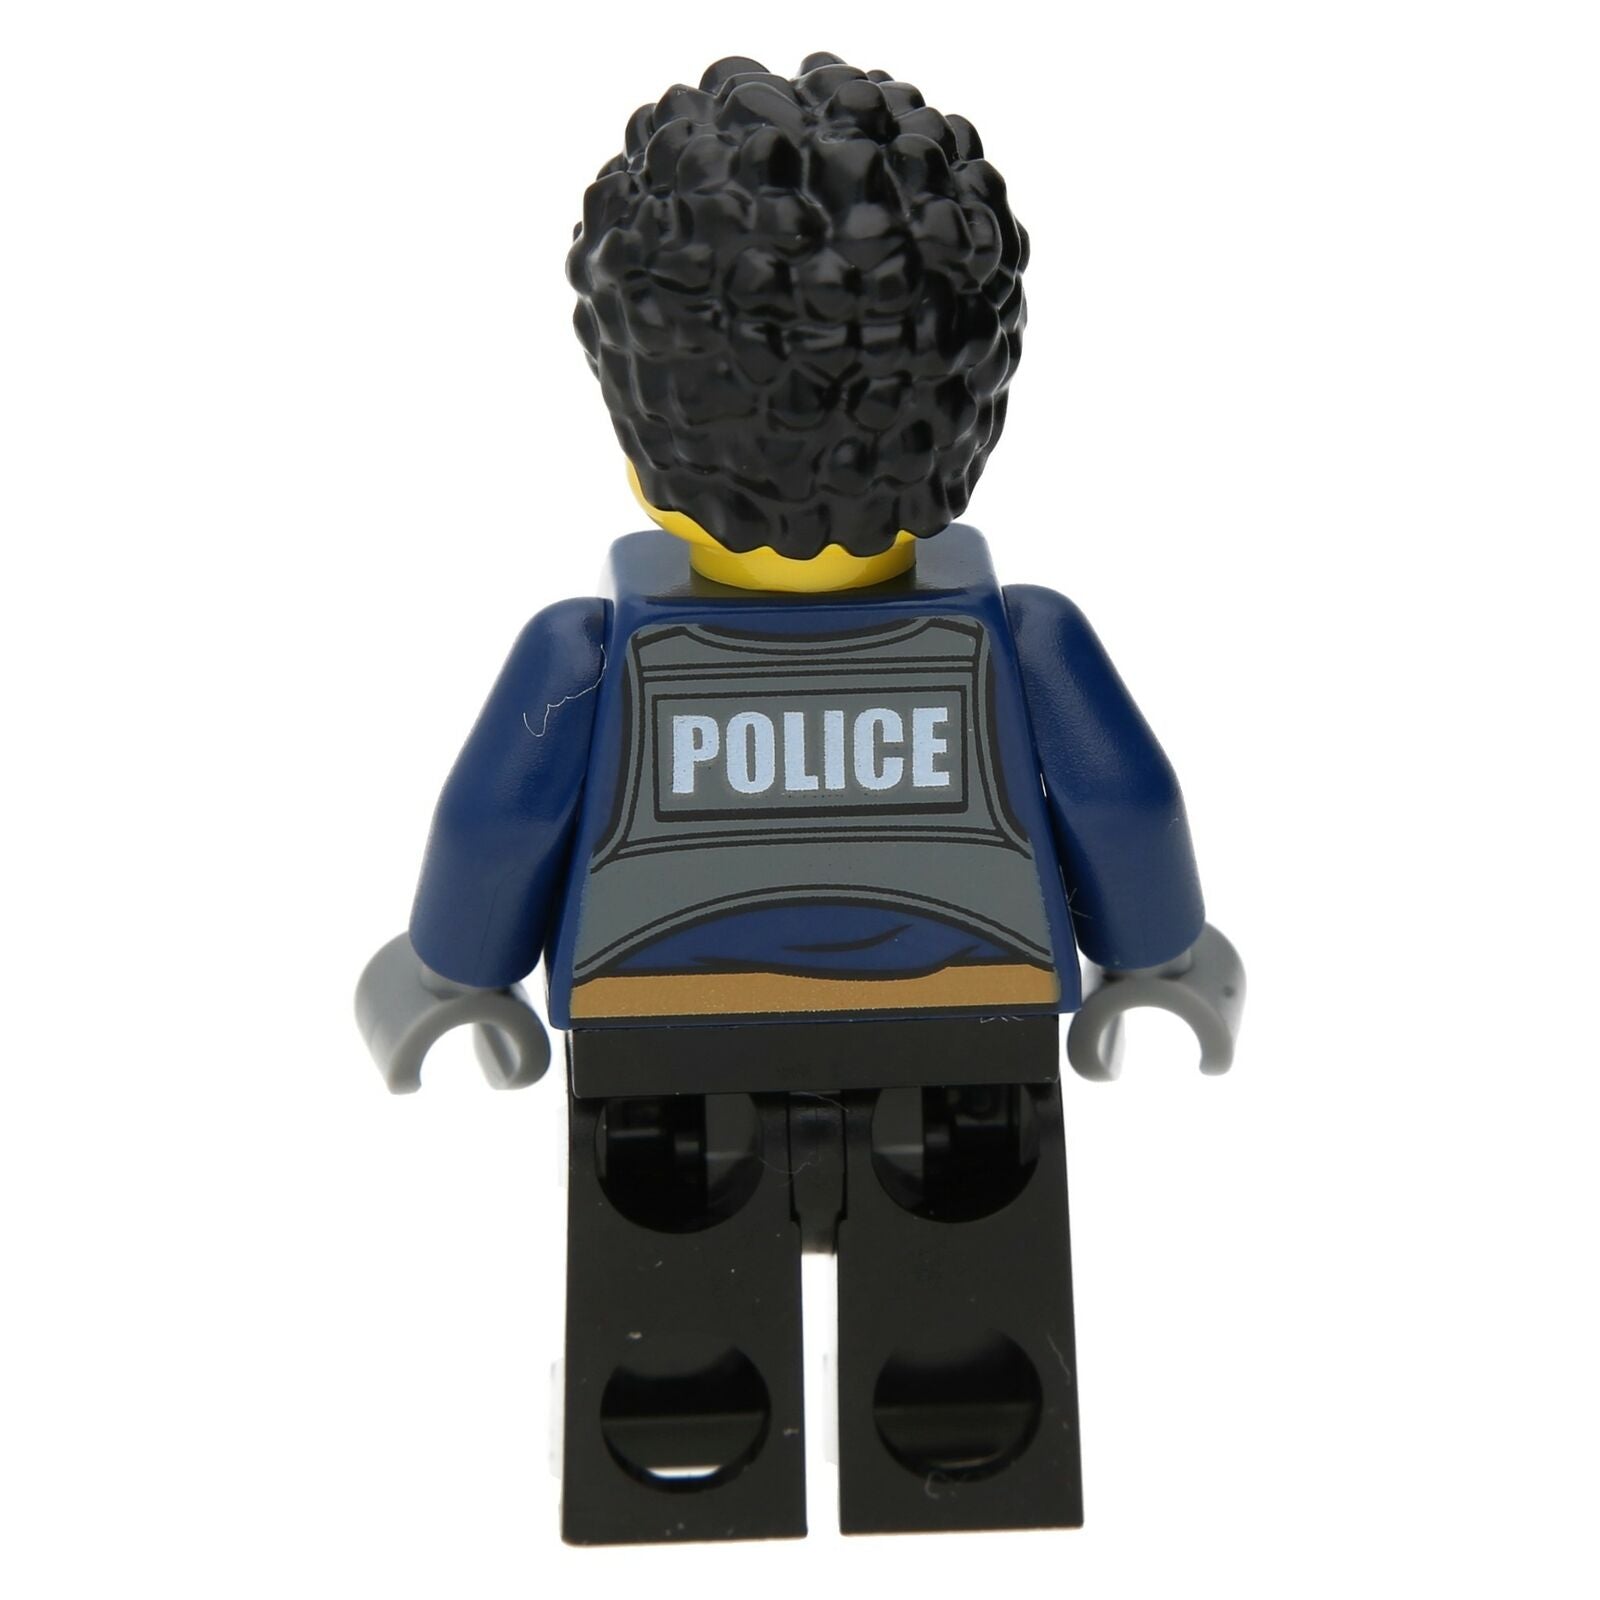 LEGO City Minifigure - Police Officer Duke Detail